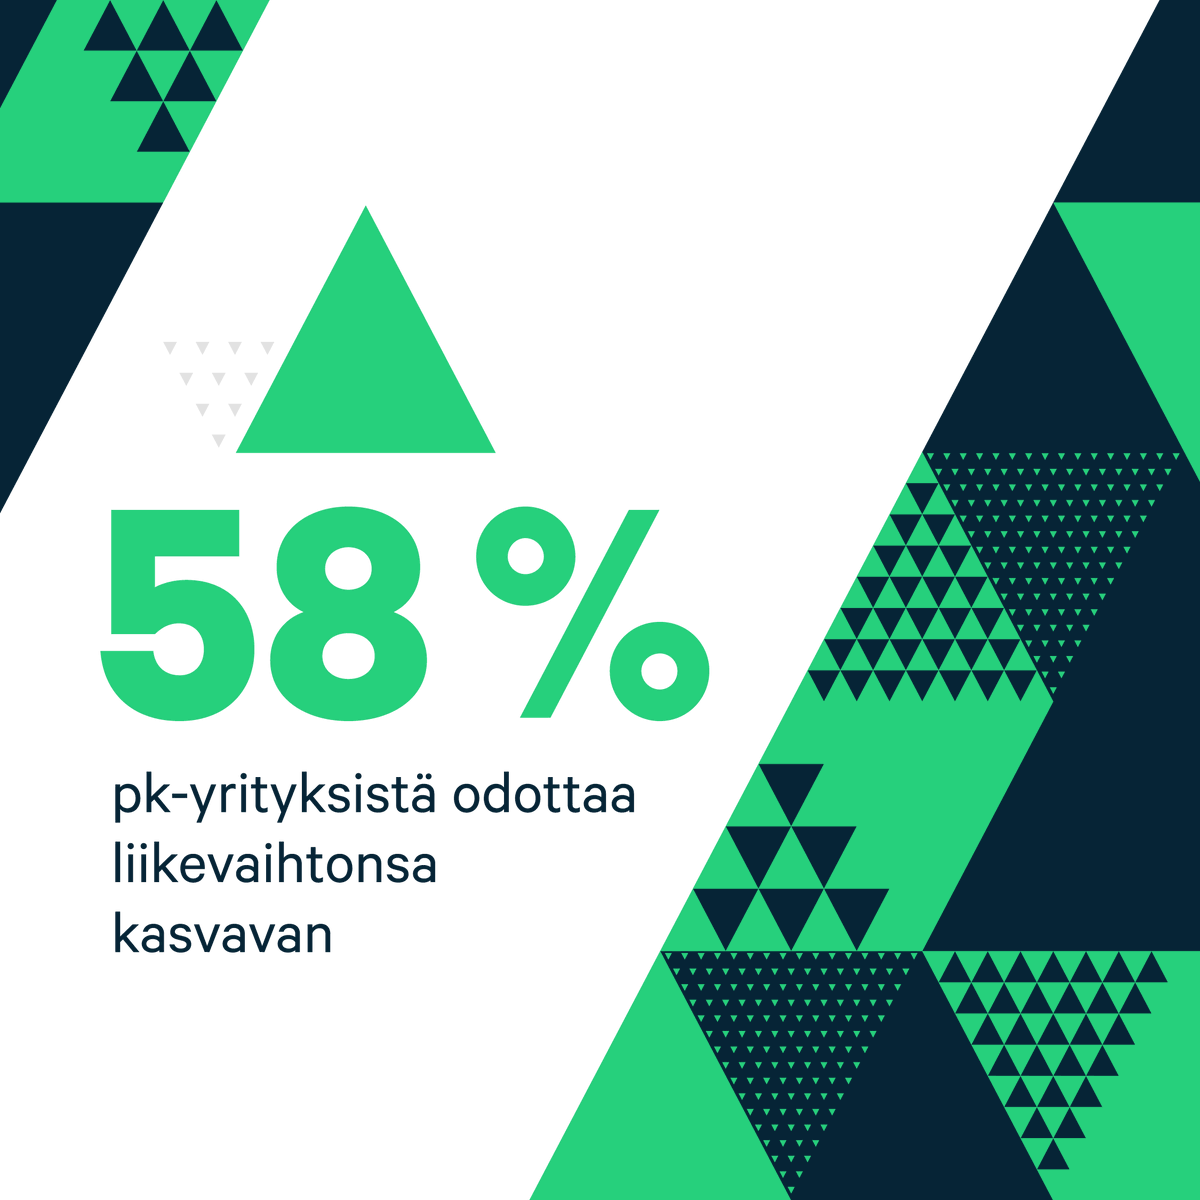 ✅Pk-barometrimme paljasti, että lähes kuusi kymmenestä suomalaisesta pk-yrityksestä odottaa liikevaihtonsa kasvavan seuraavan 12 kuukauden aikana.📄 Lataa maksuton tutkimusraportti tästä » https://t.co/0X62CJzcN7
#AzetsSMEChampions #pkyritys #azets https://t.co/SOGgDe73yv